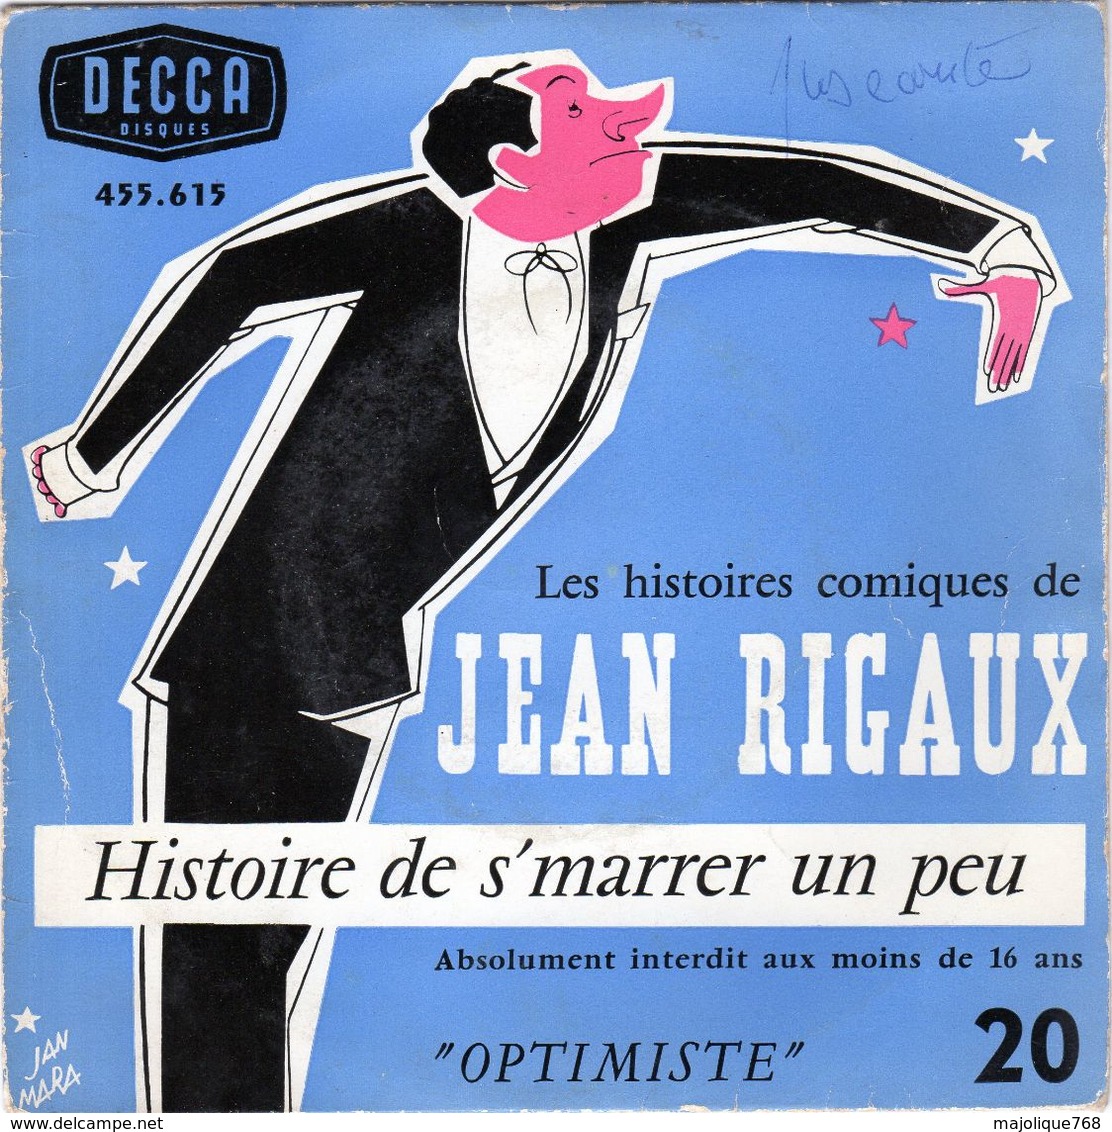 Disque - Jean Rigaux Optimiste N°20 - Histoire De S'marrer Un Peu - DECCA 455.615 - - Comiques, Cabaret